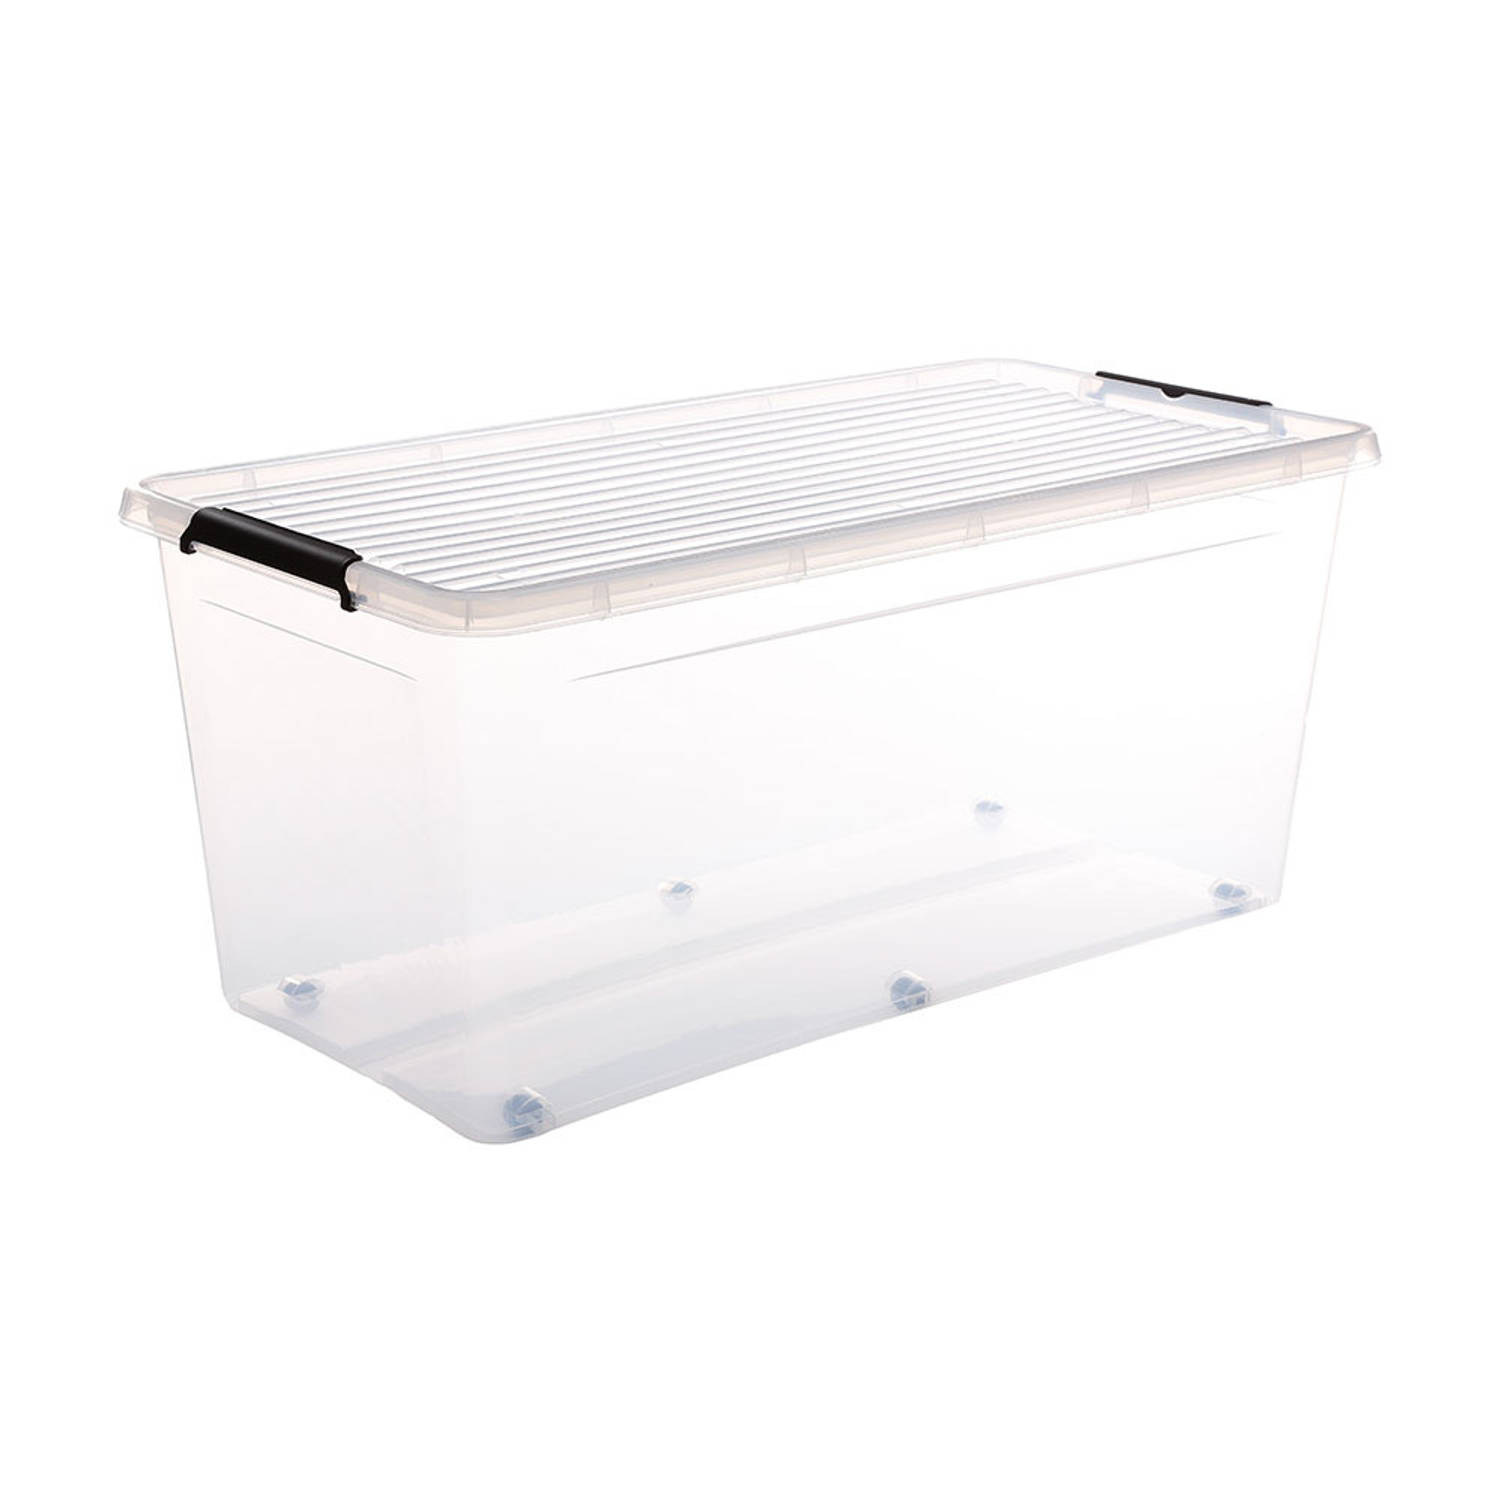 Five® Doorzichtige opbergboxen met clipsluiting 75 liter - 75 liter - rolbaar (76 x 39 x 35 cm) - Stapelbaar, Klaar voor gebruik